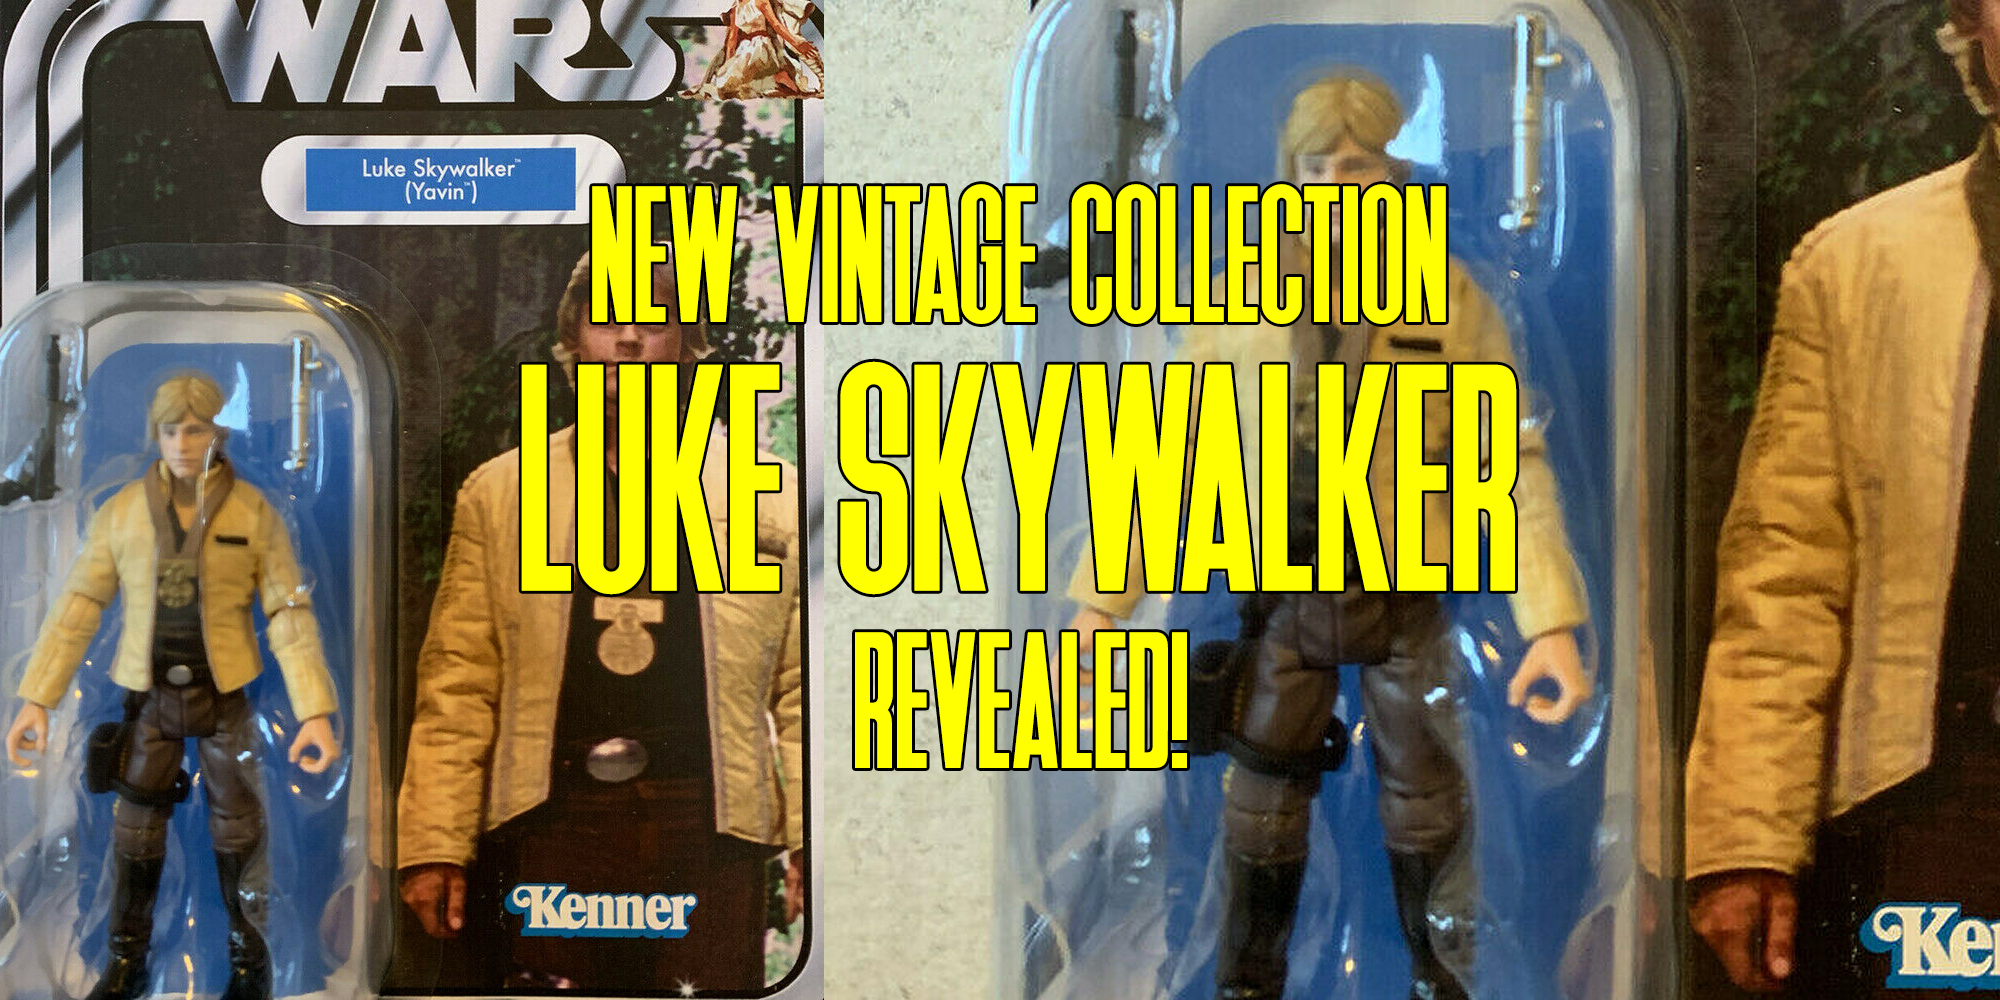 The Vintage Collection Luke Skywalker Ceremonial Revealed!